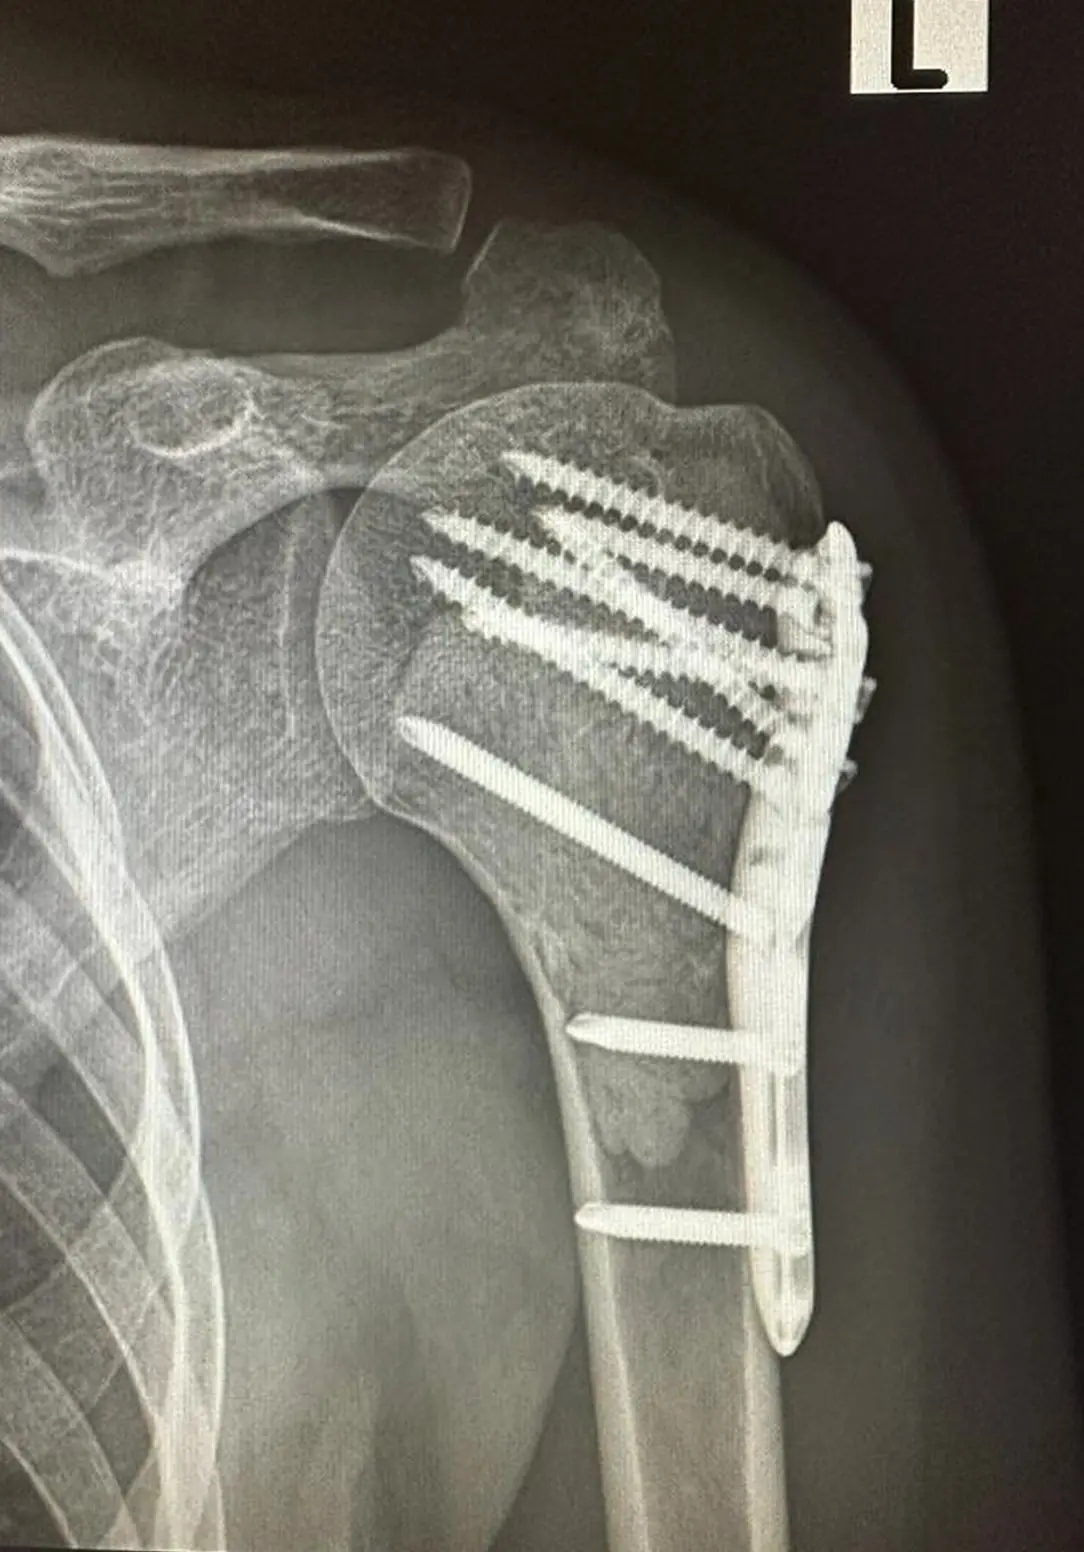 Humerus üst uç kitle-biyopsi sonucu Grade 1 Kondrosarkom olarak gelen hastaya yapılan küretaj -sementasyon - plaklama ameliyatı X-Ray röntgen görüntüsü.